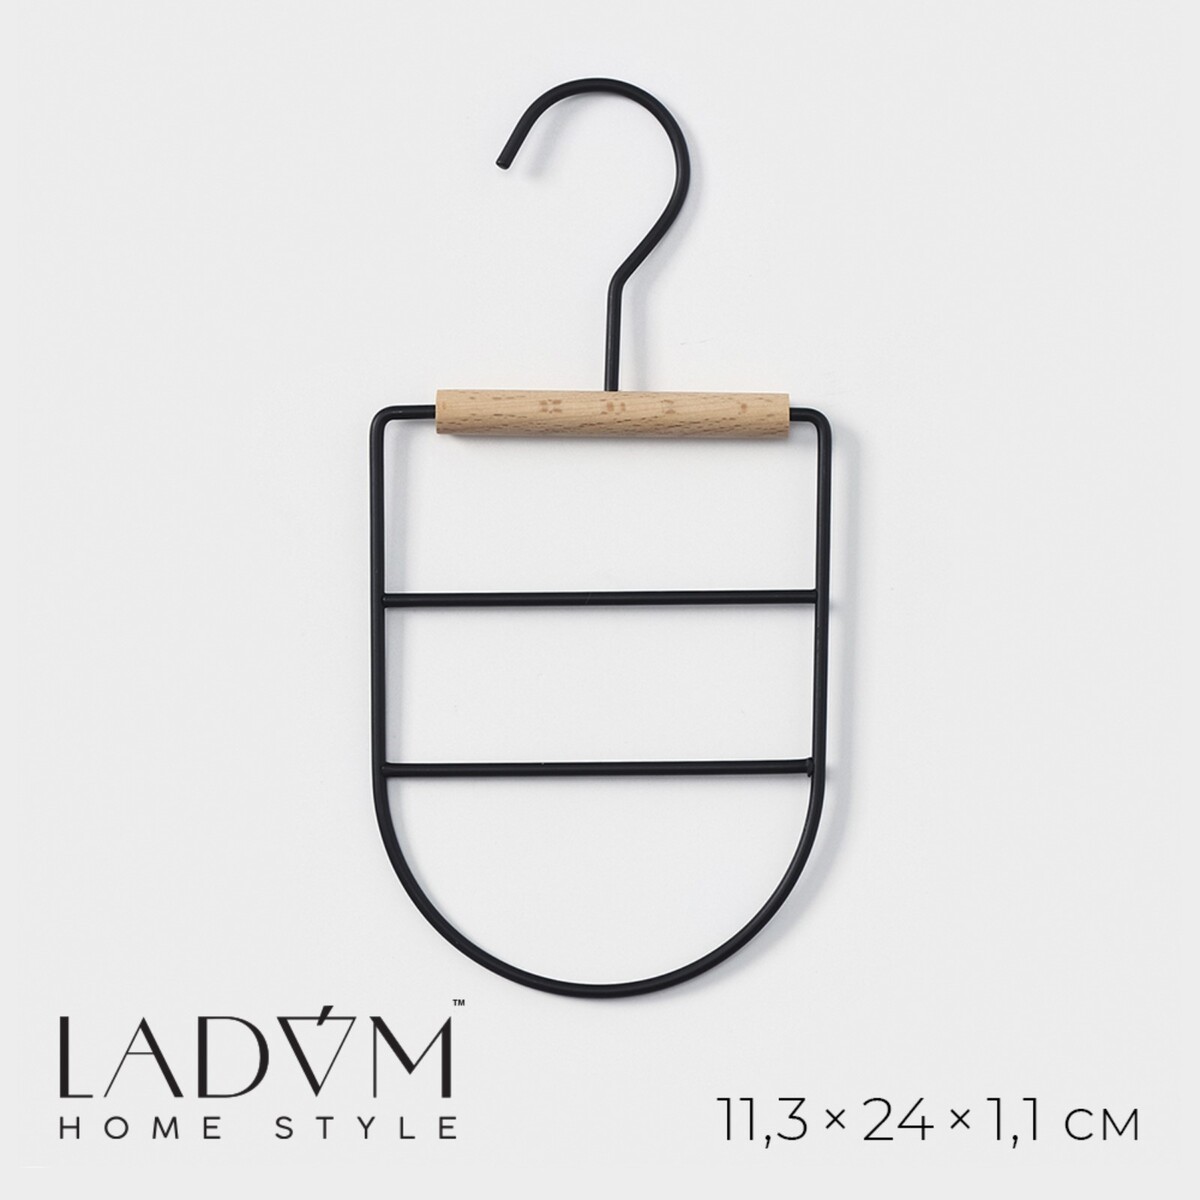 Вешалка органайзер для ремней и шарфов многоуровневая ladо́m laconique, 11,5×23,5×1,1 см, цвет черный